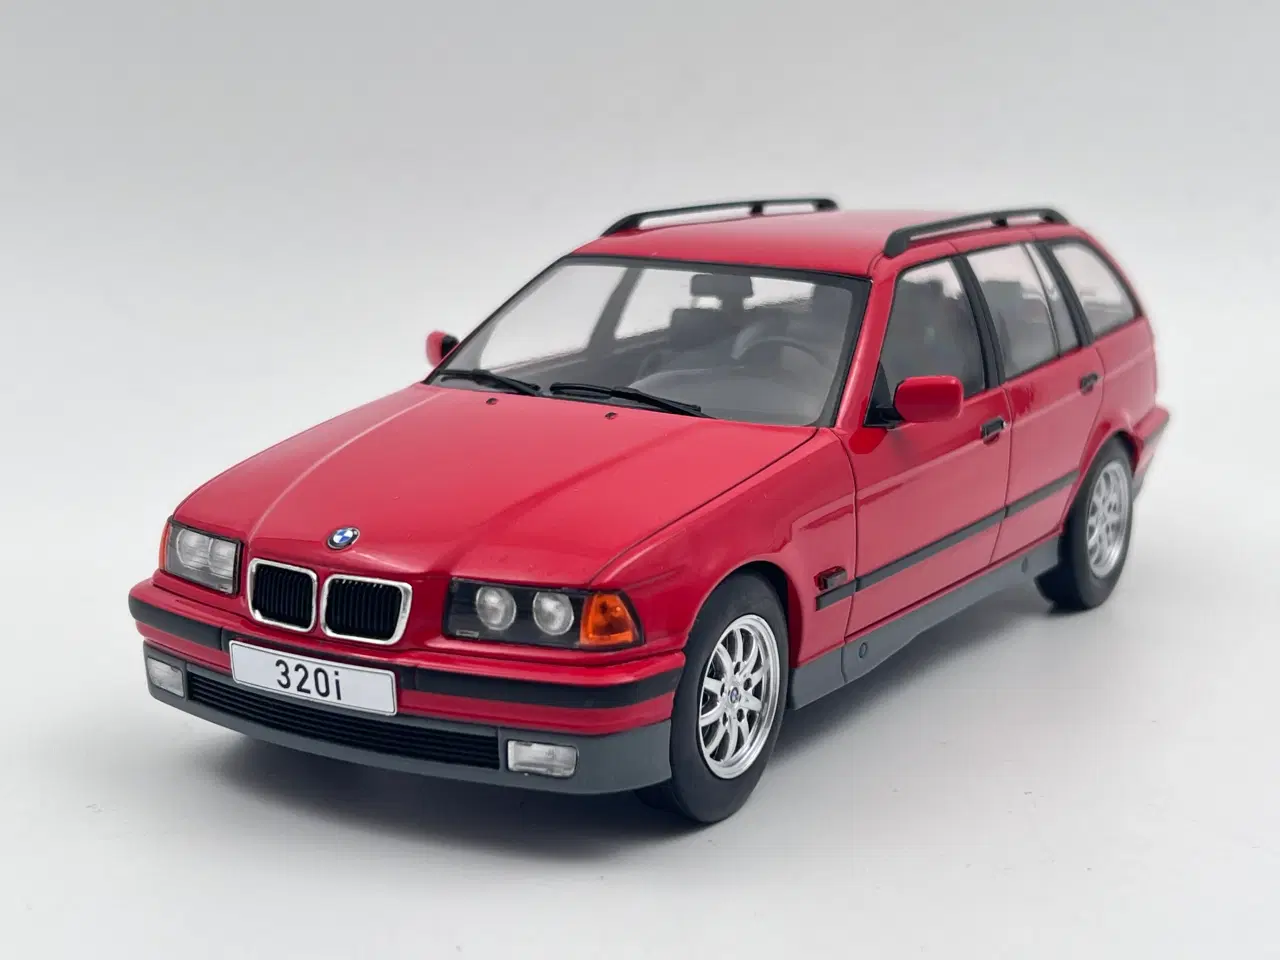 Billede 1 - 1995 BMW 320i Touring E36 1:18  Flot og detaljeret